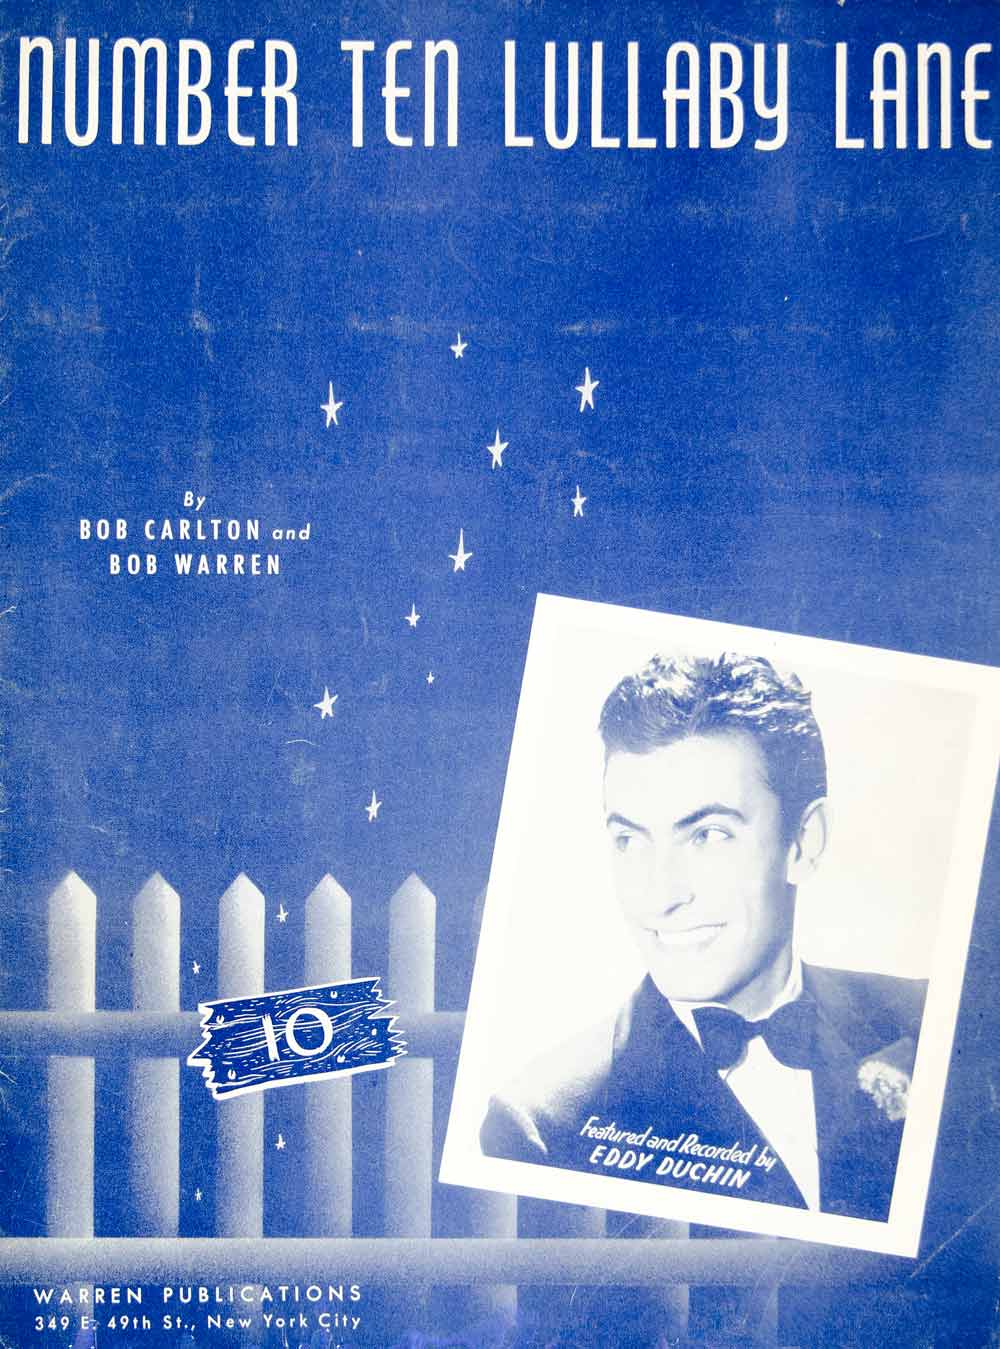 1940 Sheet Music Number Ten Lullaby Lane Eddy Duchin Singer Bob Carlton ZSM1